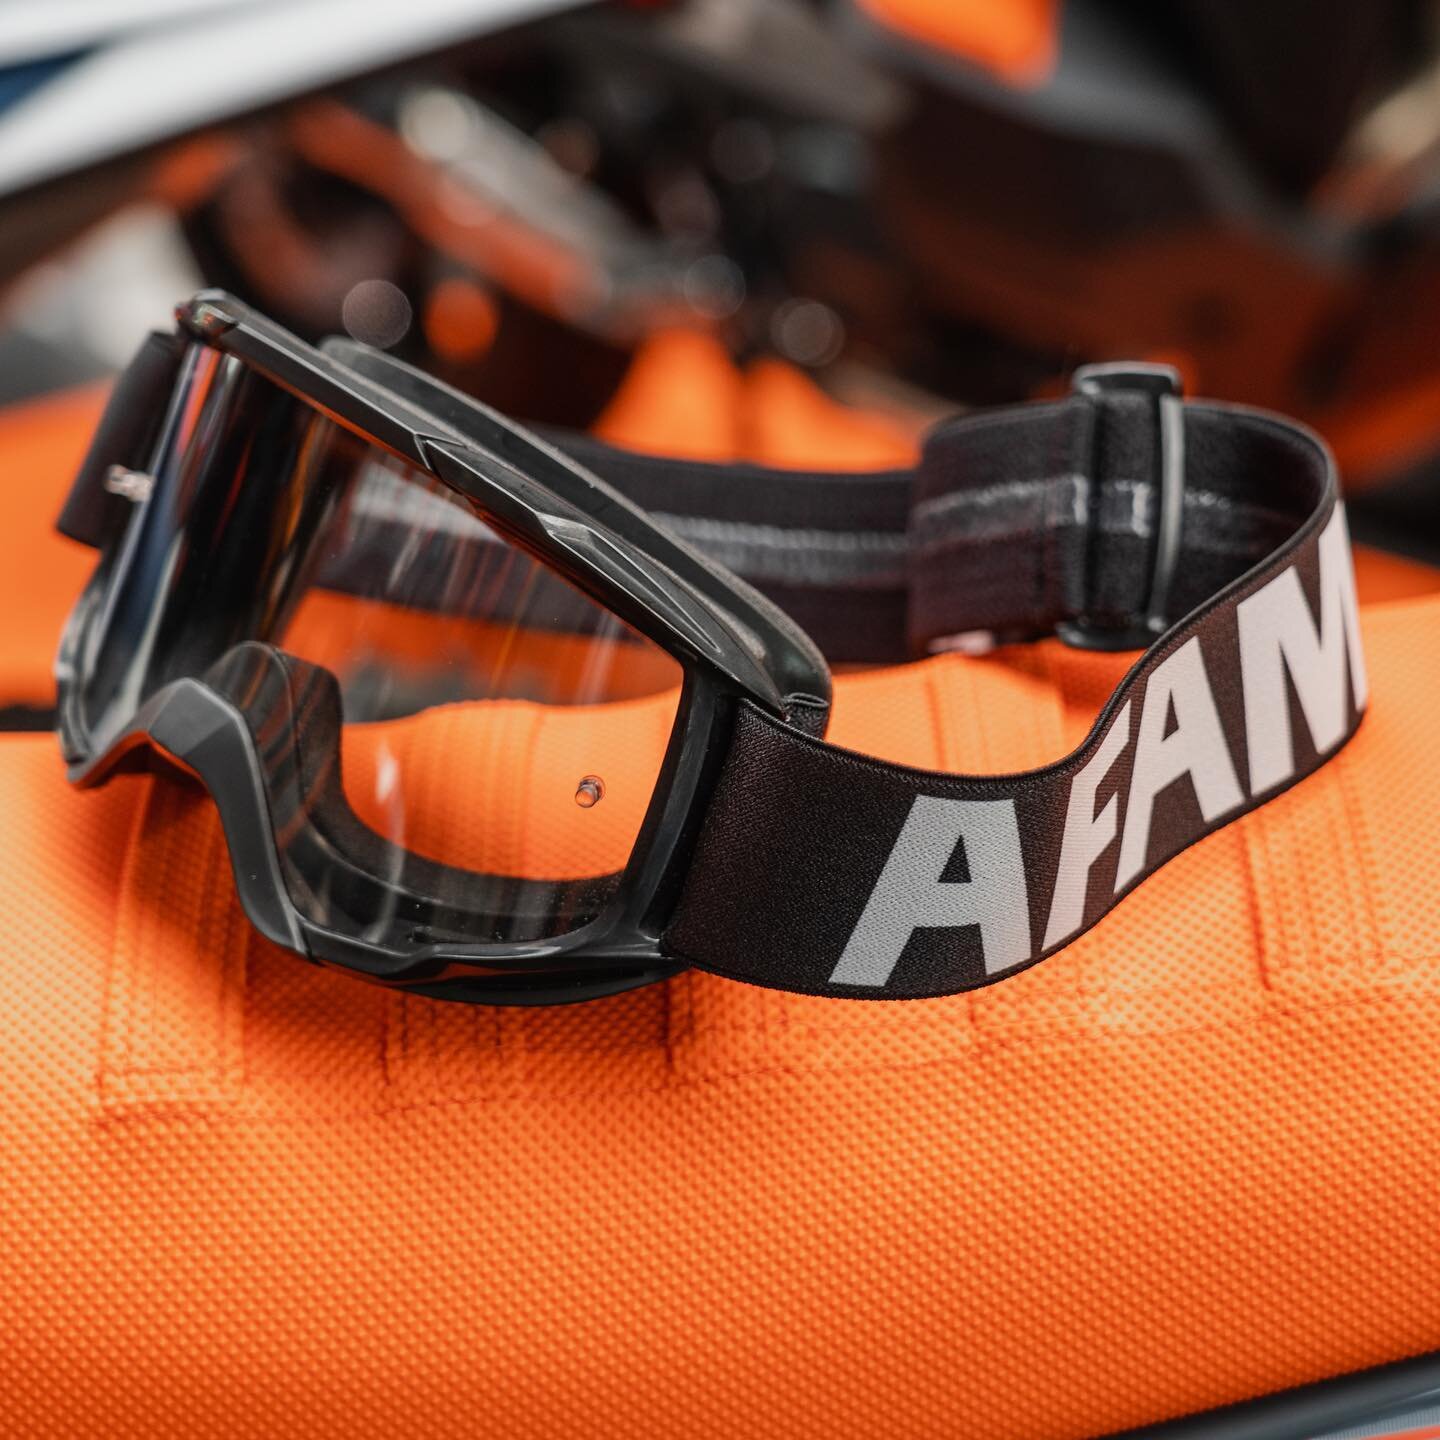 Hola y bienvenido a AFAM GROUP, líderes en la producción y distribución de piezas de desgaste y accesorios de primera calidad para motocicletas.

En 2021 comenzamos a encender un fuego, una nueva aventura que necesitábamos emprender. Había una necesidad de evolucionar, de desbloquear nuestro verdadero pote